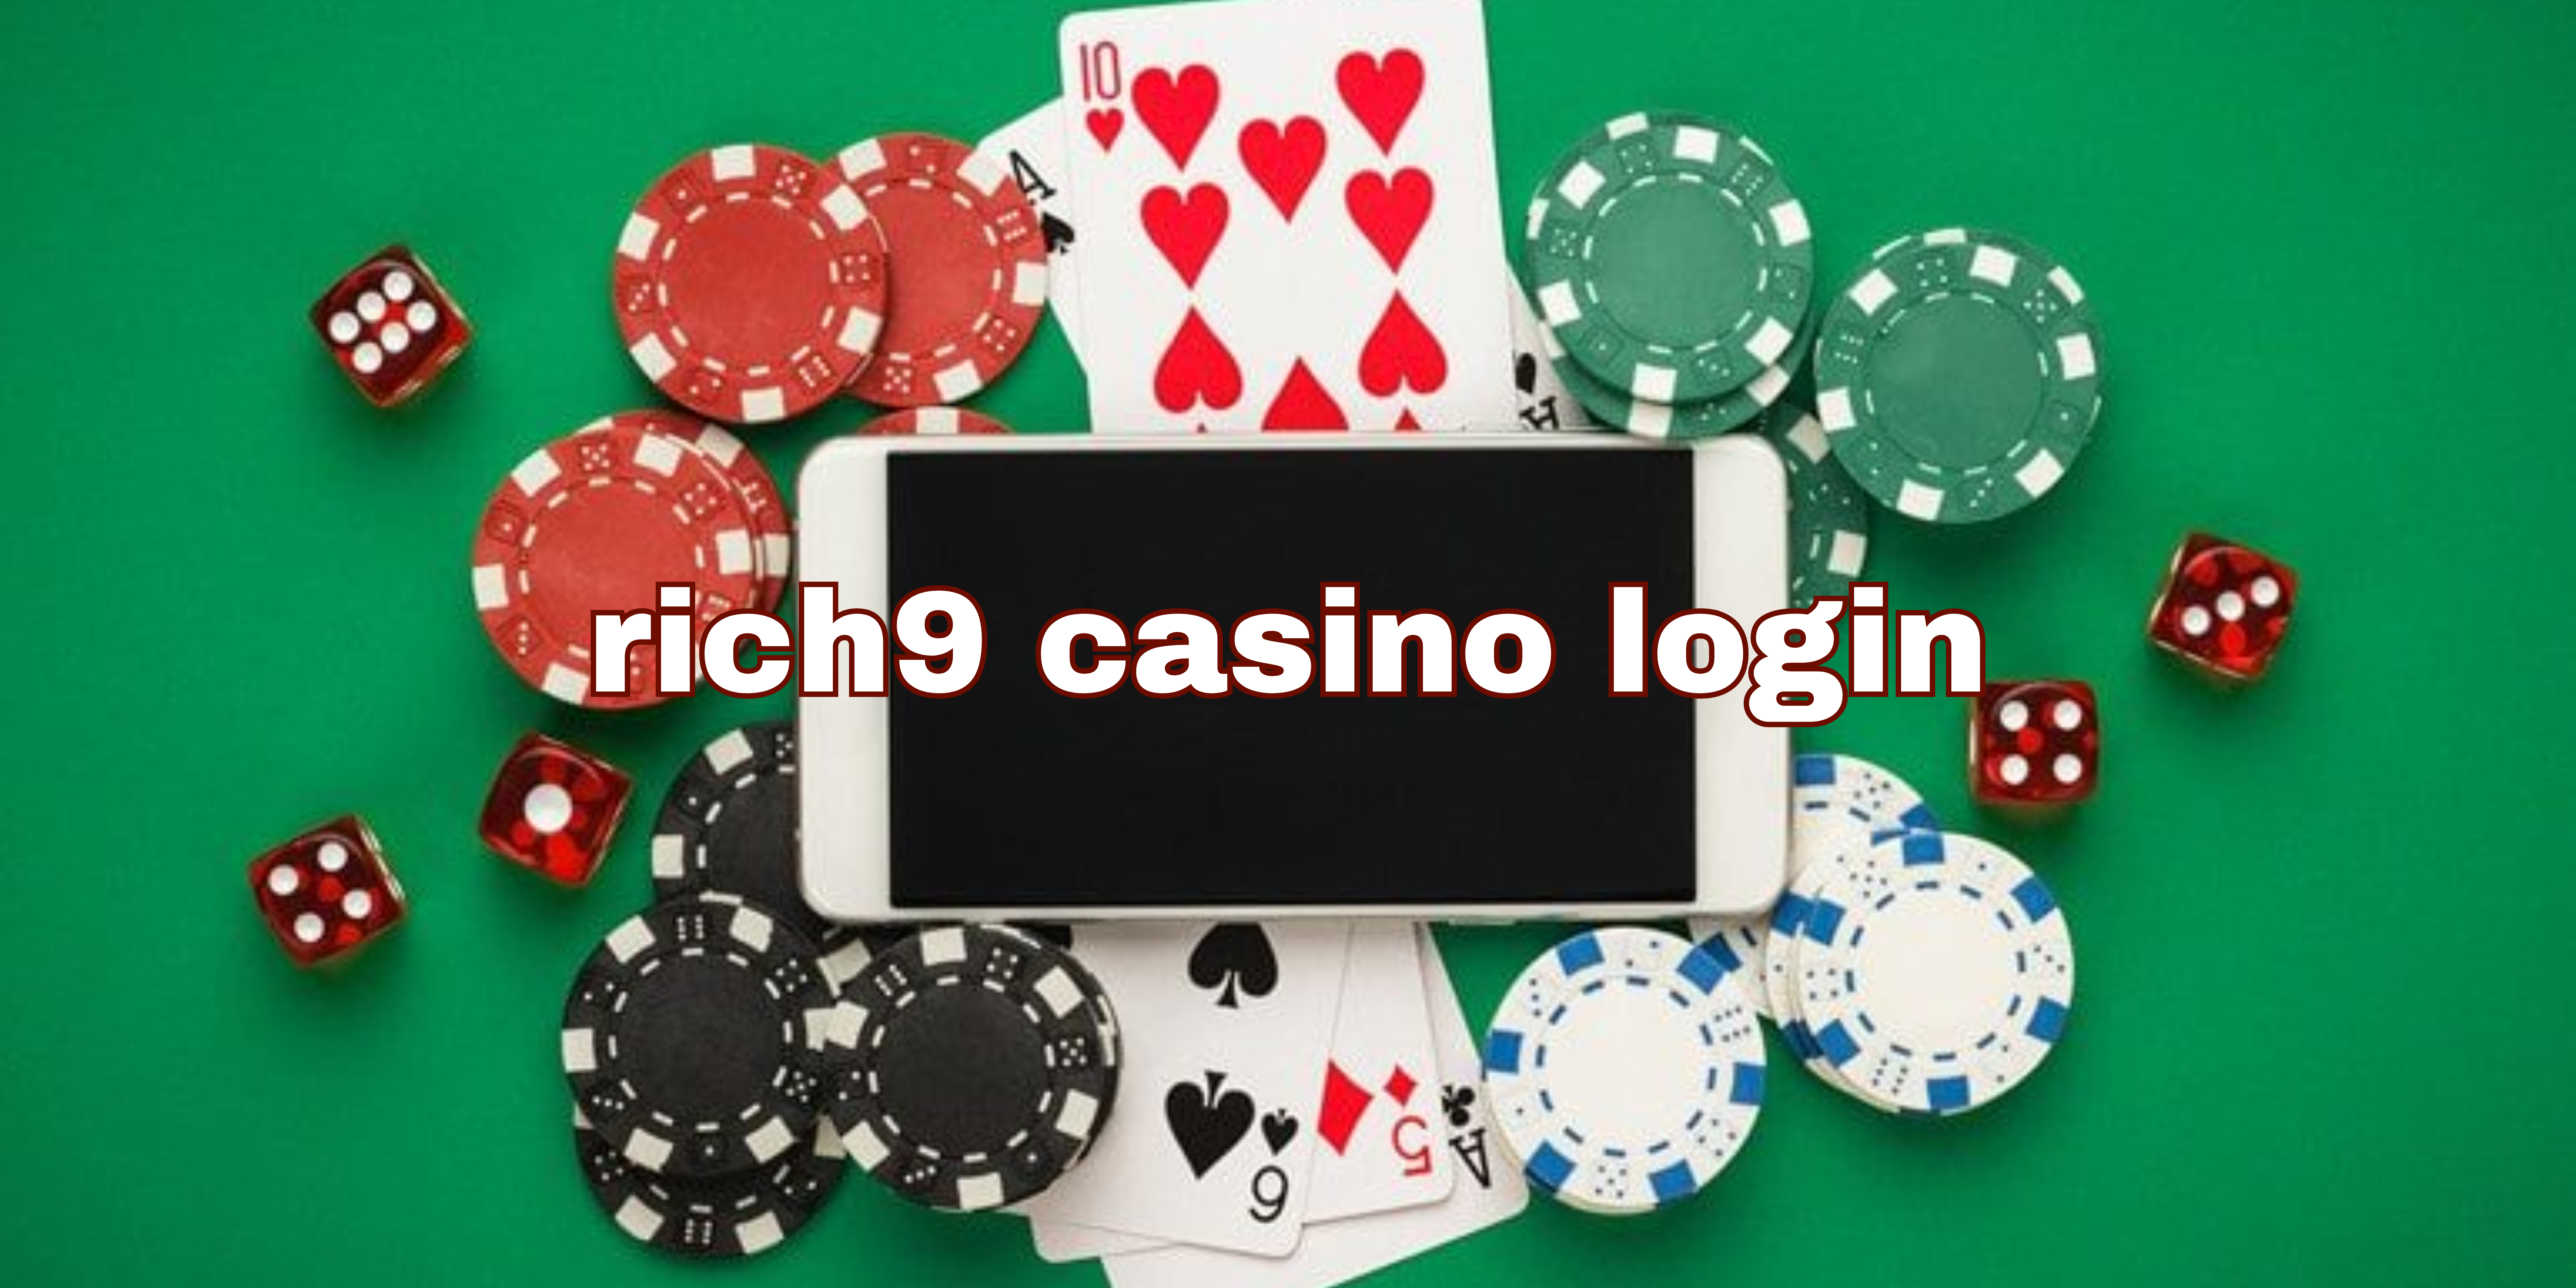 rich9 casino login